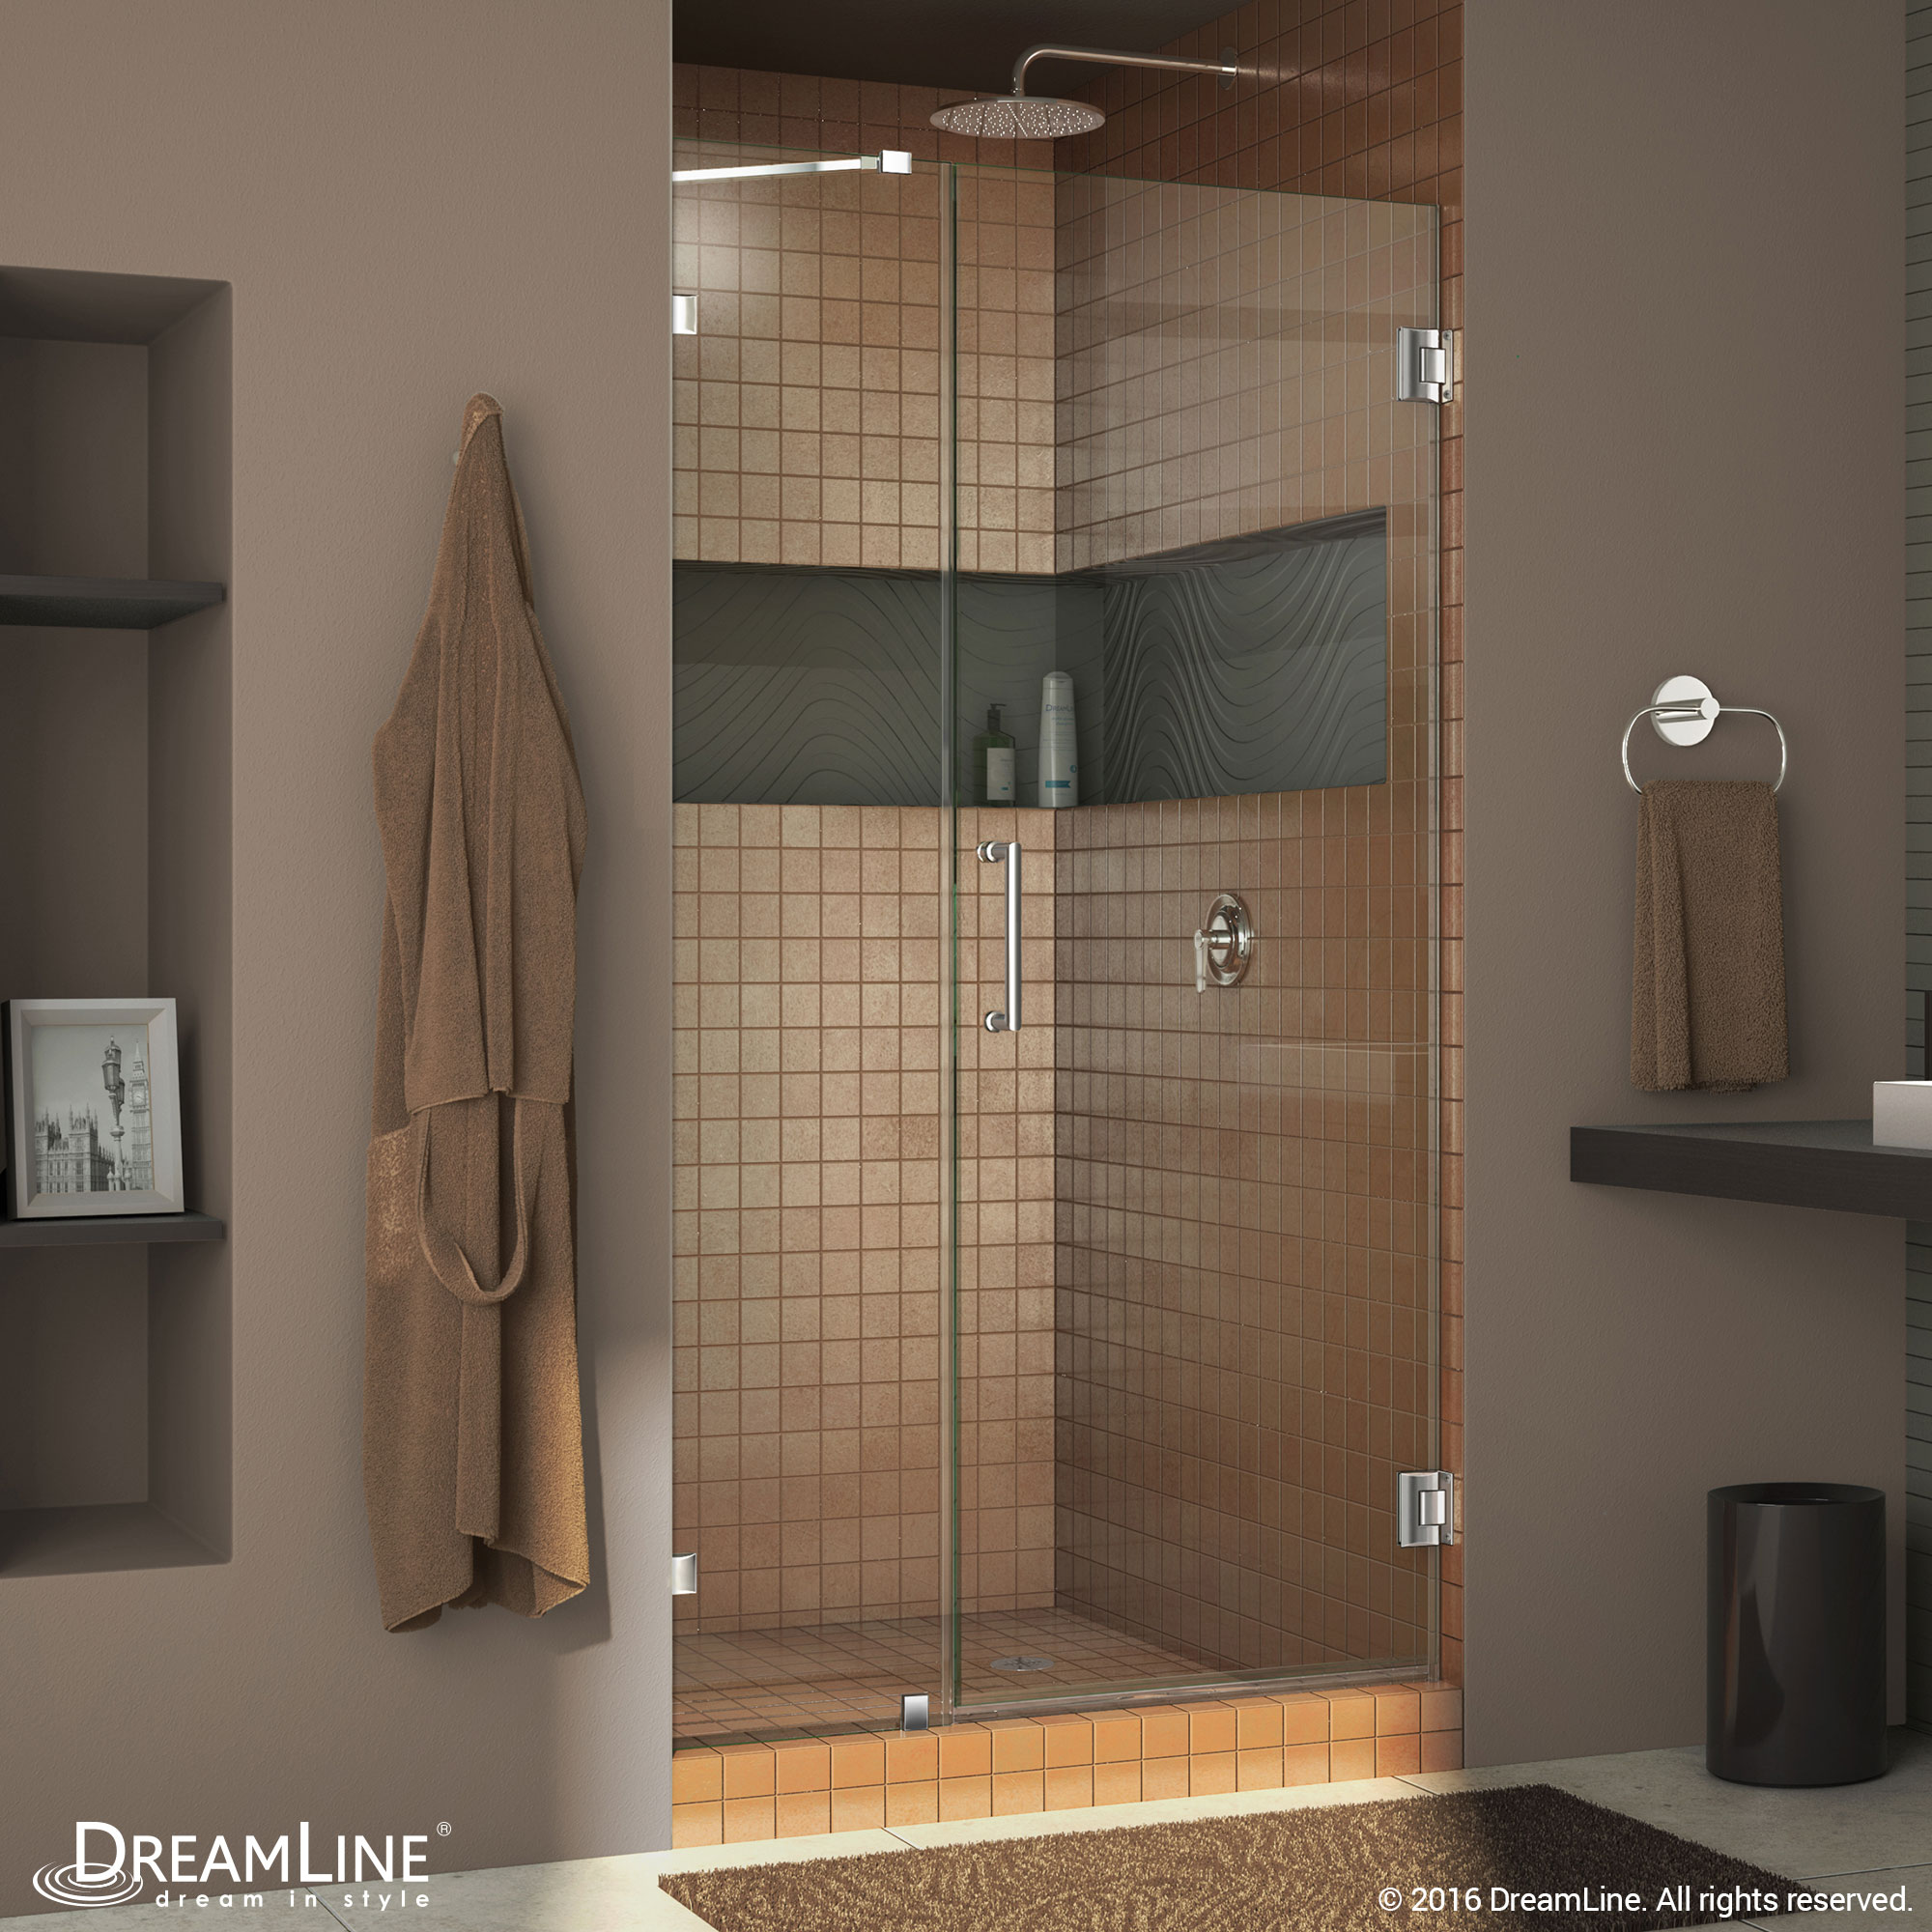 Dreamline SHDR-23487210-01 Chrome Radiance 48" Frameless Hinged Shower Door